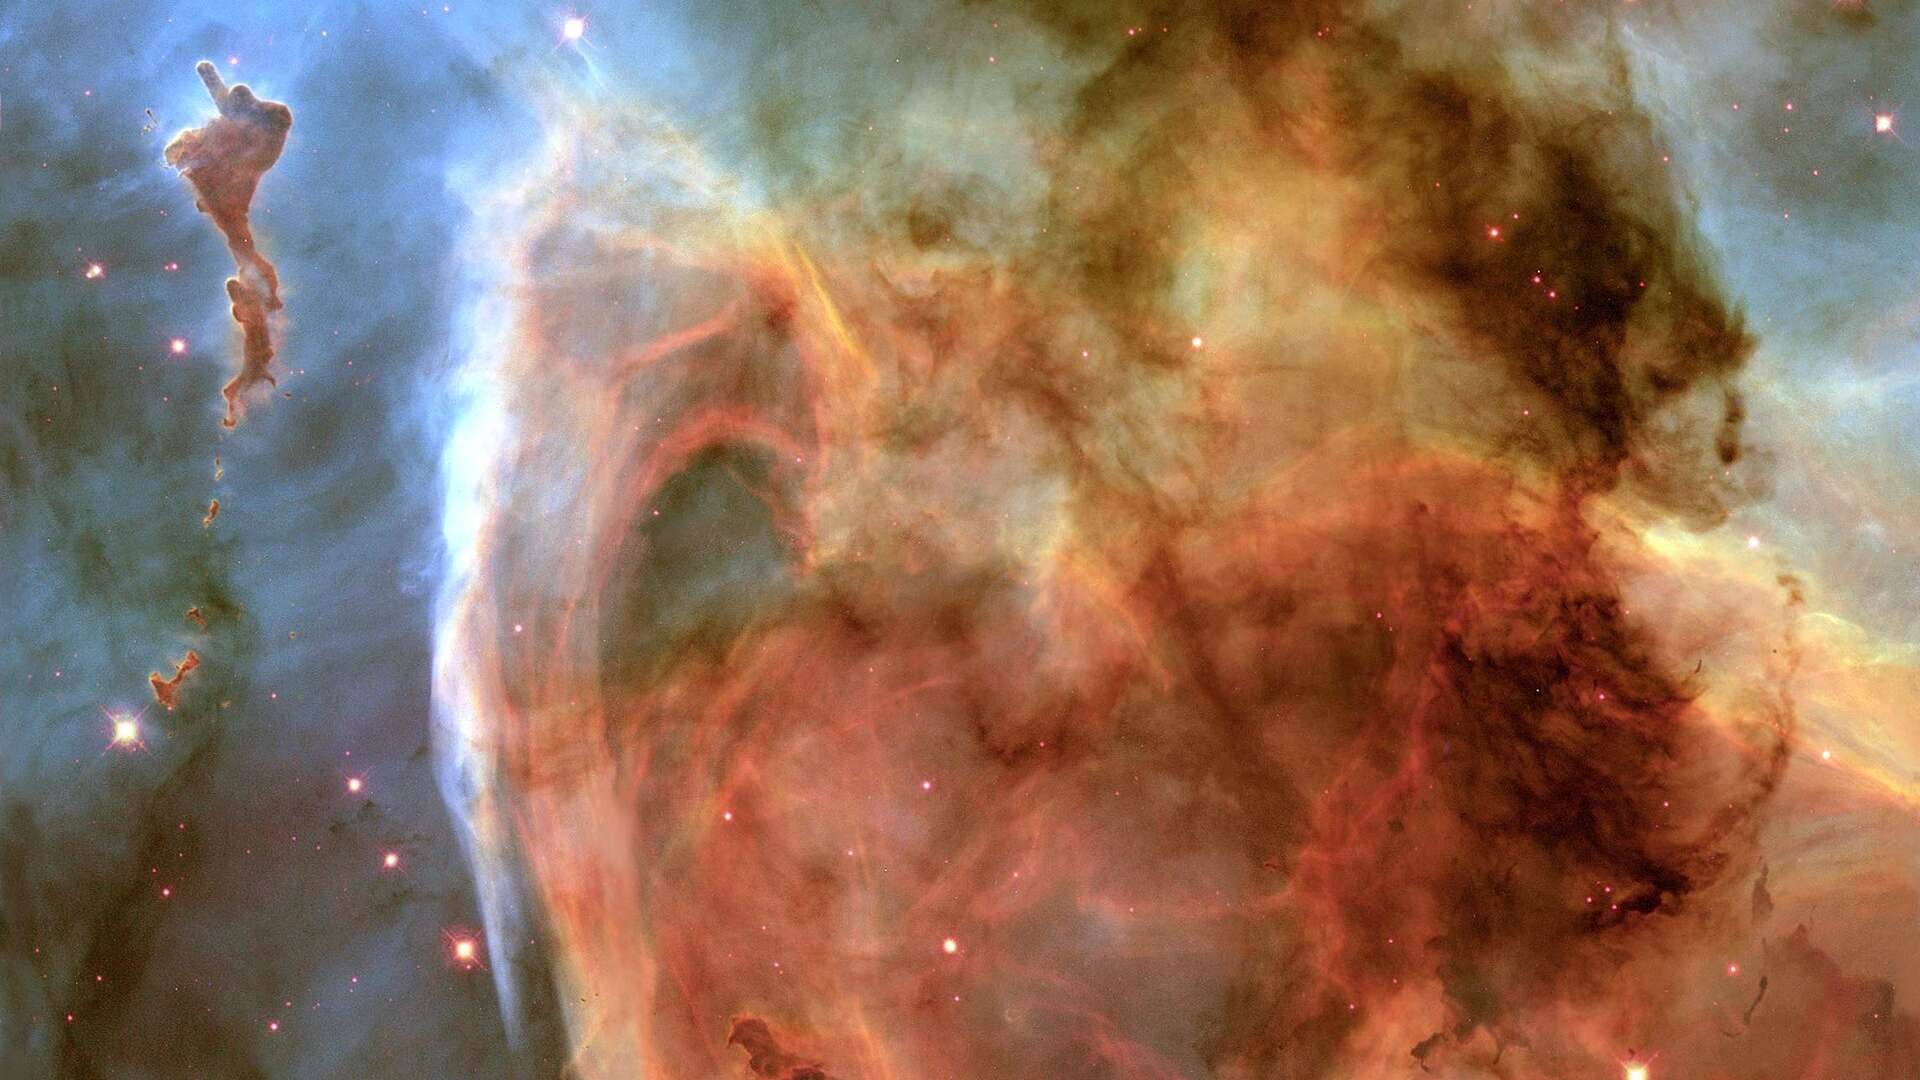 Detalhes preciosos são revelados nesta estrutura complexa dentro da Nebulosa de Carina (NGC 3372). A imagem retrata o que também ficou conhecido como 'Nebulosa Buraco da Fechadura' e foi feita pelo Telescópio Espacial Hubble. Esta região, a cerca de 8 mil anos-luz da Terra, está localizada ao lado da famosa estrela variável e explosiva Eta Carinae, que está fora do campo de visão, mas na extensão do canto superior direito. A Nebulosa de Carina também abriga outras estrelas que estão entre as mais quentes e massivas conhecidas, até 10 vezes mais quente e 100 vezes mais massivas que o nosso Sol